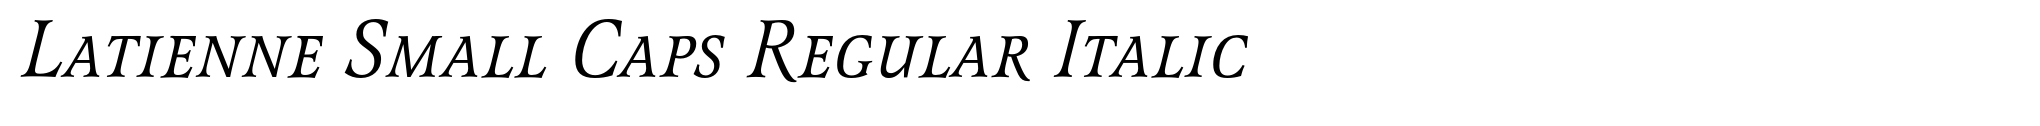 Latienne Small Caps Regular Italic image